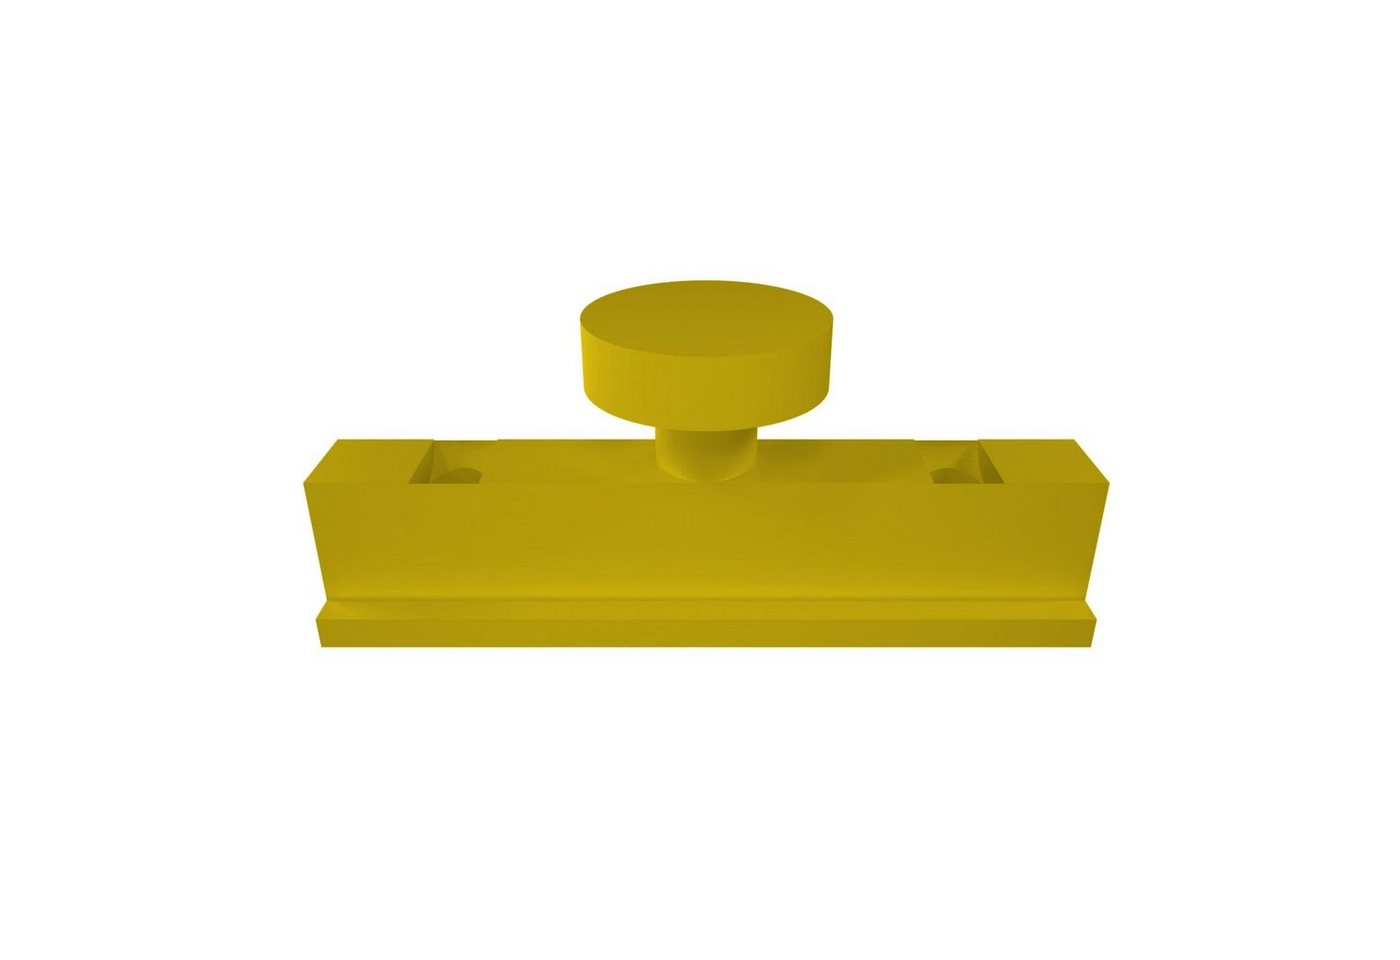 Paneelwagen Paneelwagen kompatibel für IKEA Kvartal Rollenhalter Laufleiste Schli, fossi3D von fossi3D